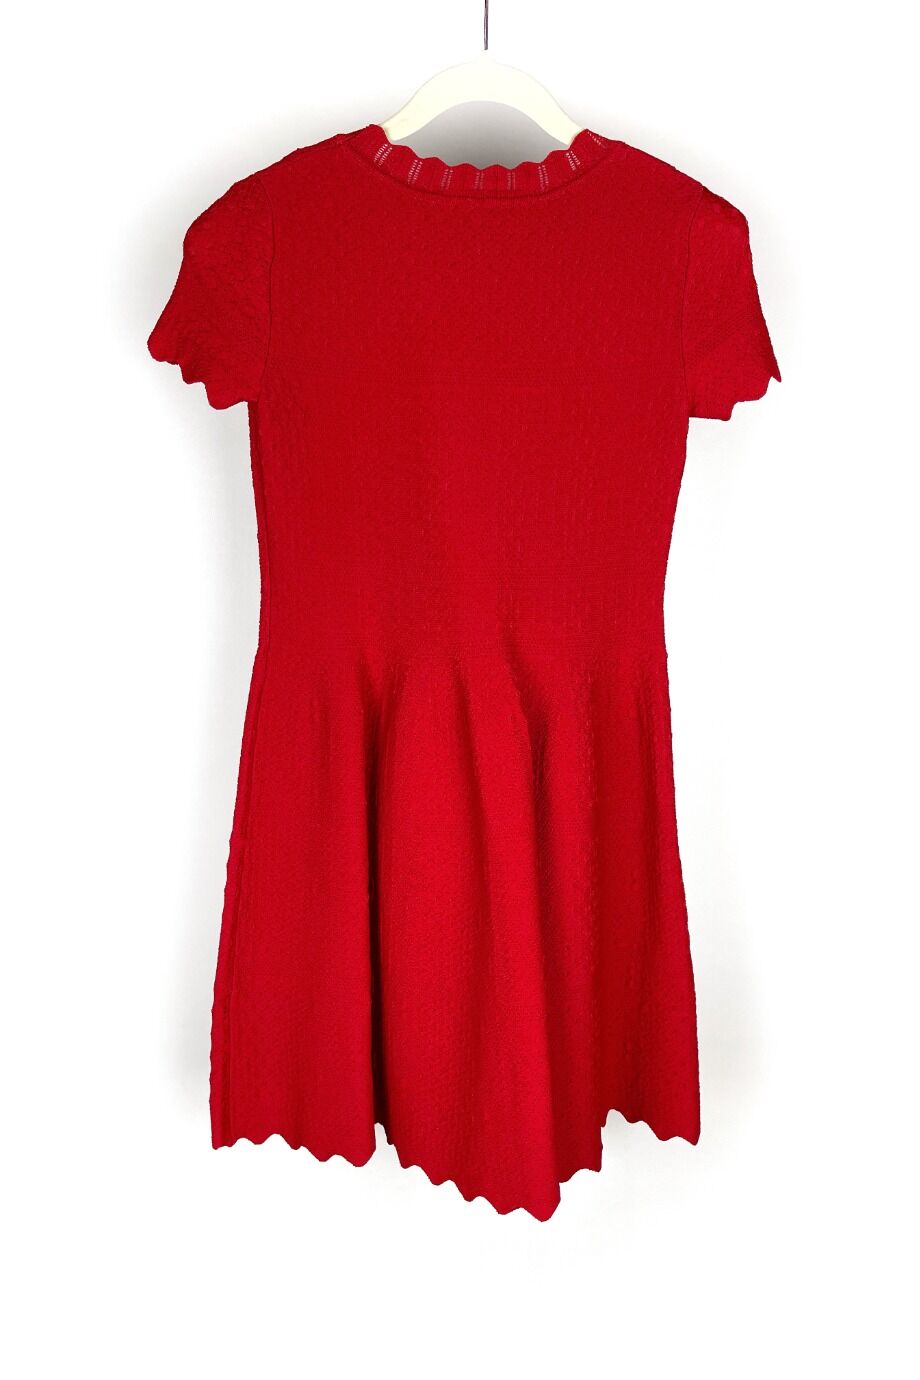 image 3 Детское платье красного цвета с перфорациями